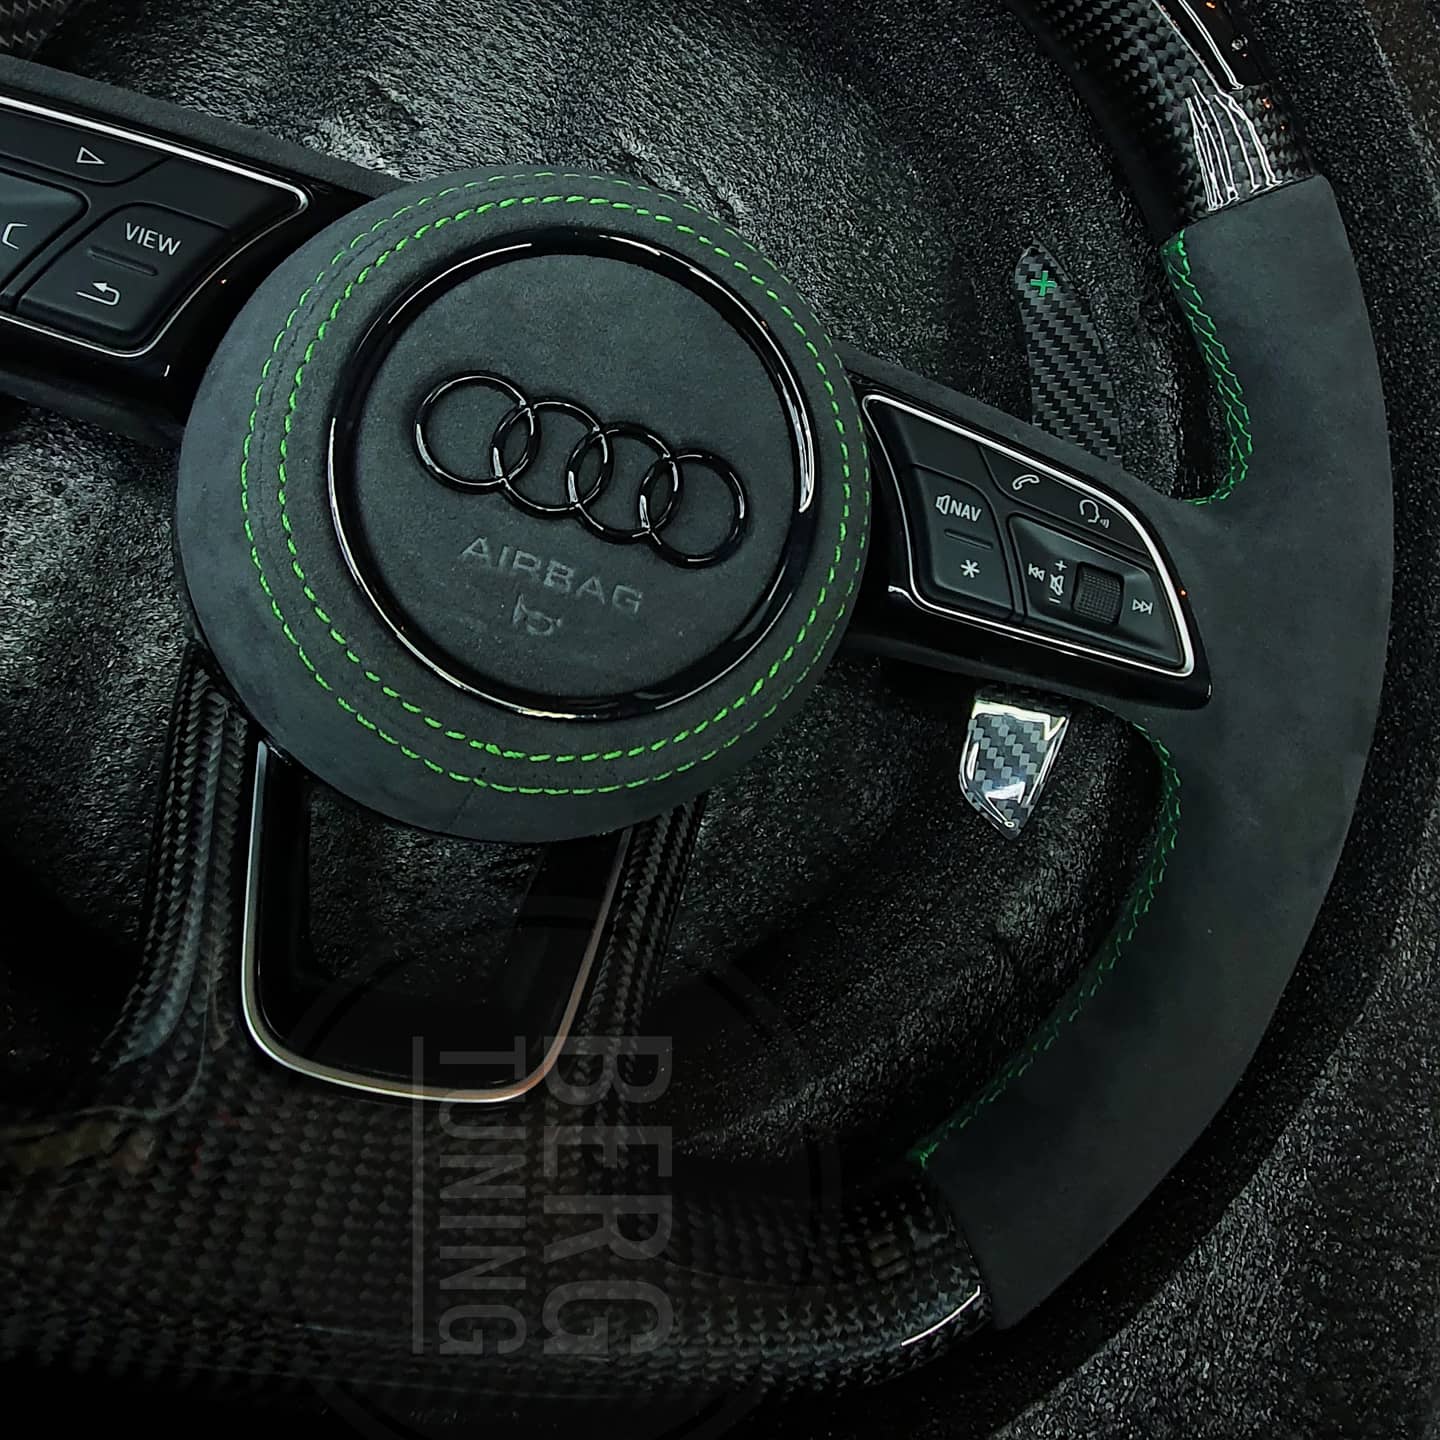 Audi Custom Steering Wheels